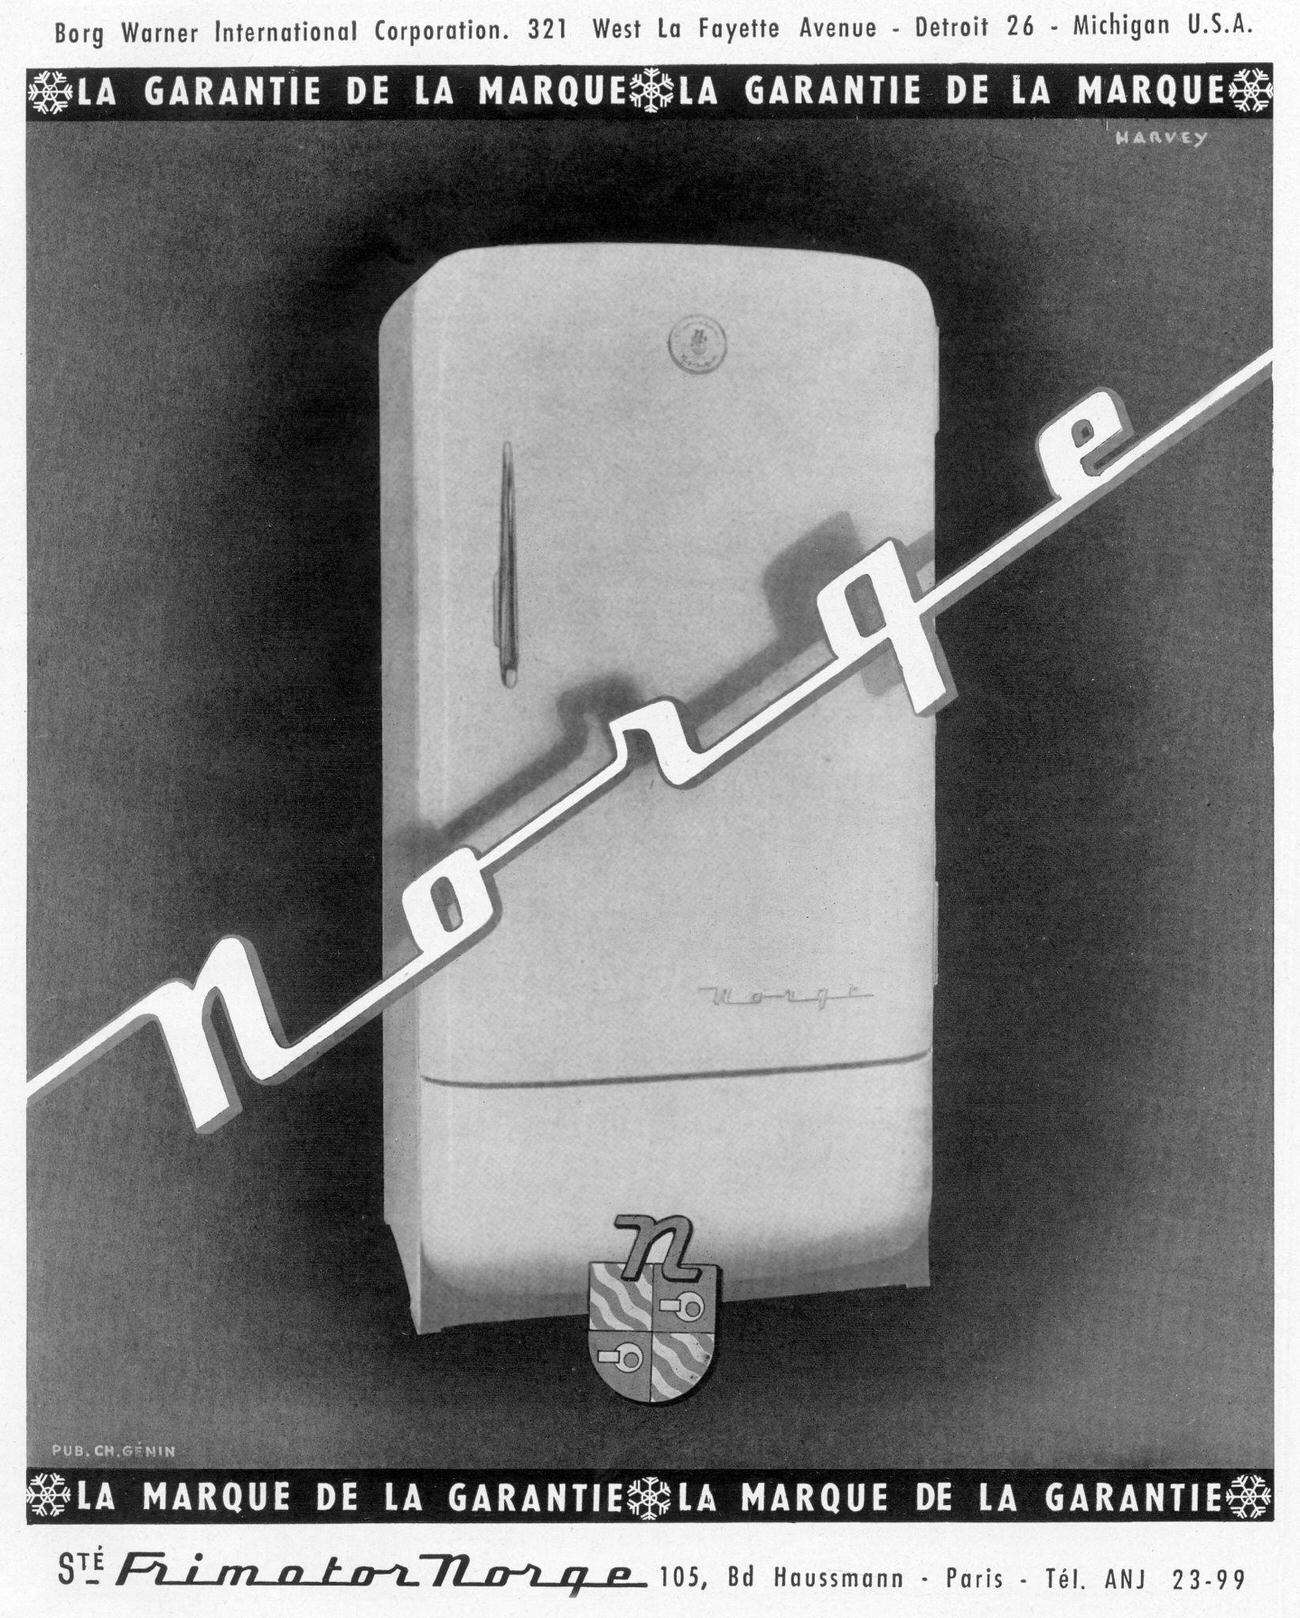 Frimotor Norge fridge ad, 1950.